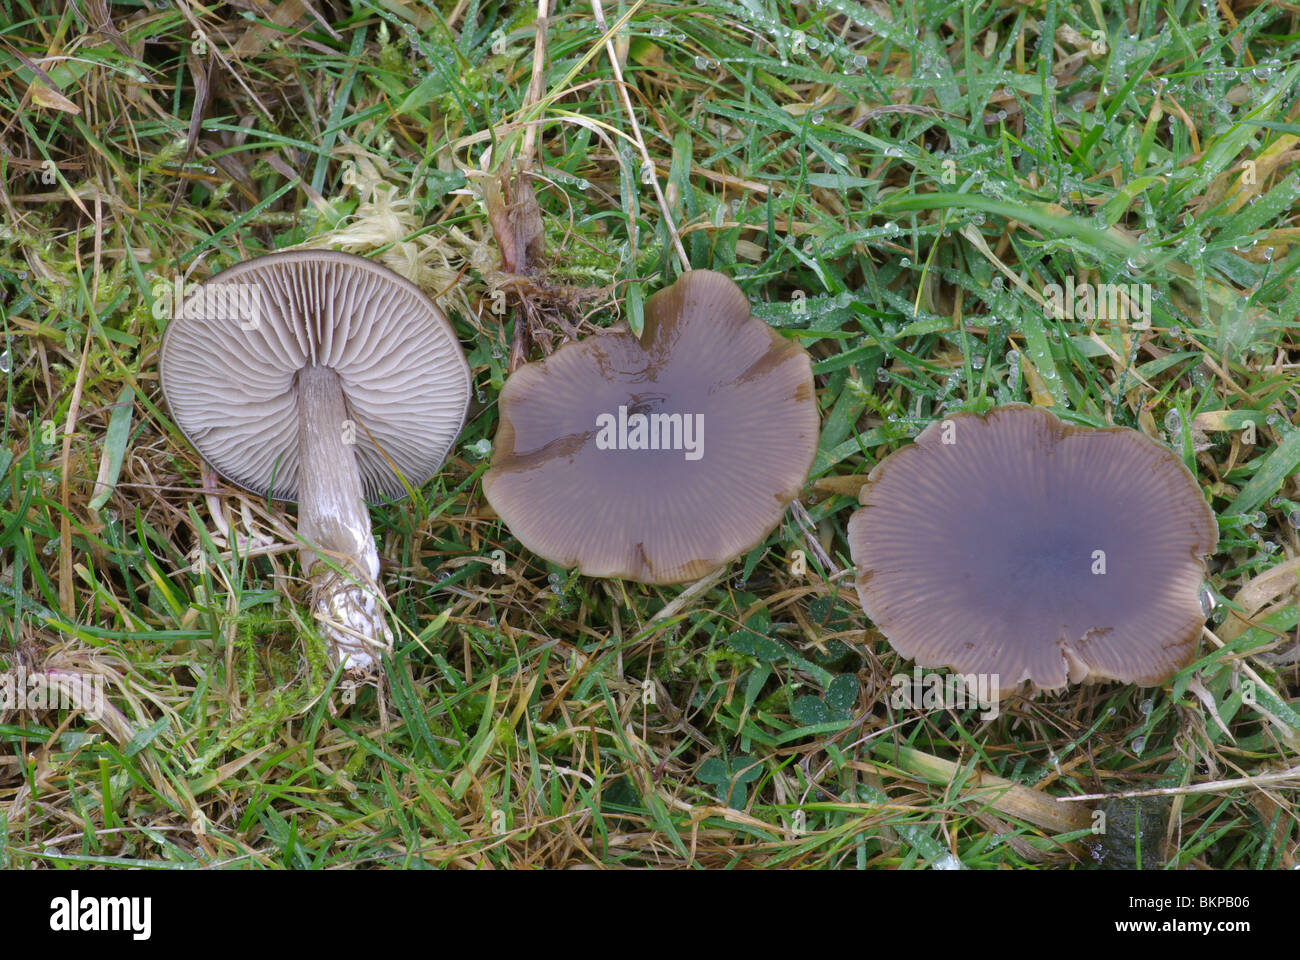 Bruine satijnzwam komt voor in bemeste graslanden; de hoeden zijn bij vochtig weer donker sepiabruin tot roodachtig bruin gekleurd Stock Photo